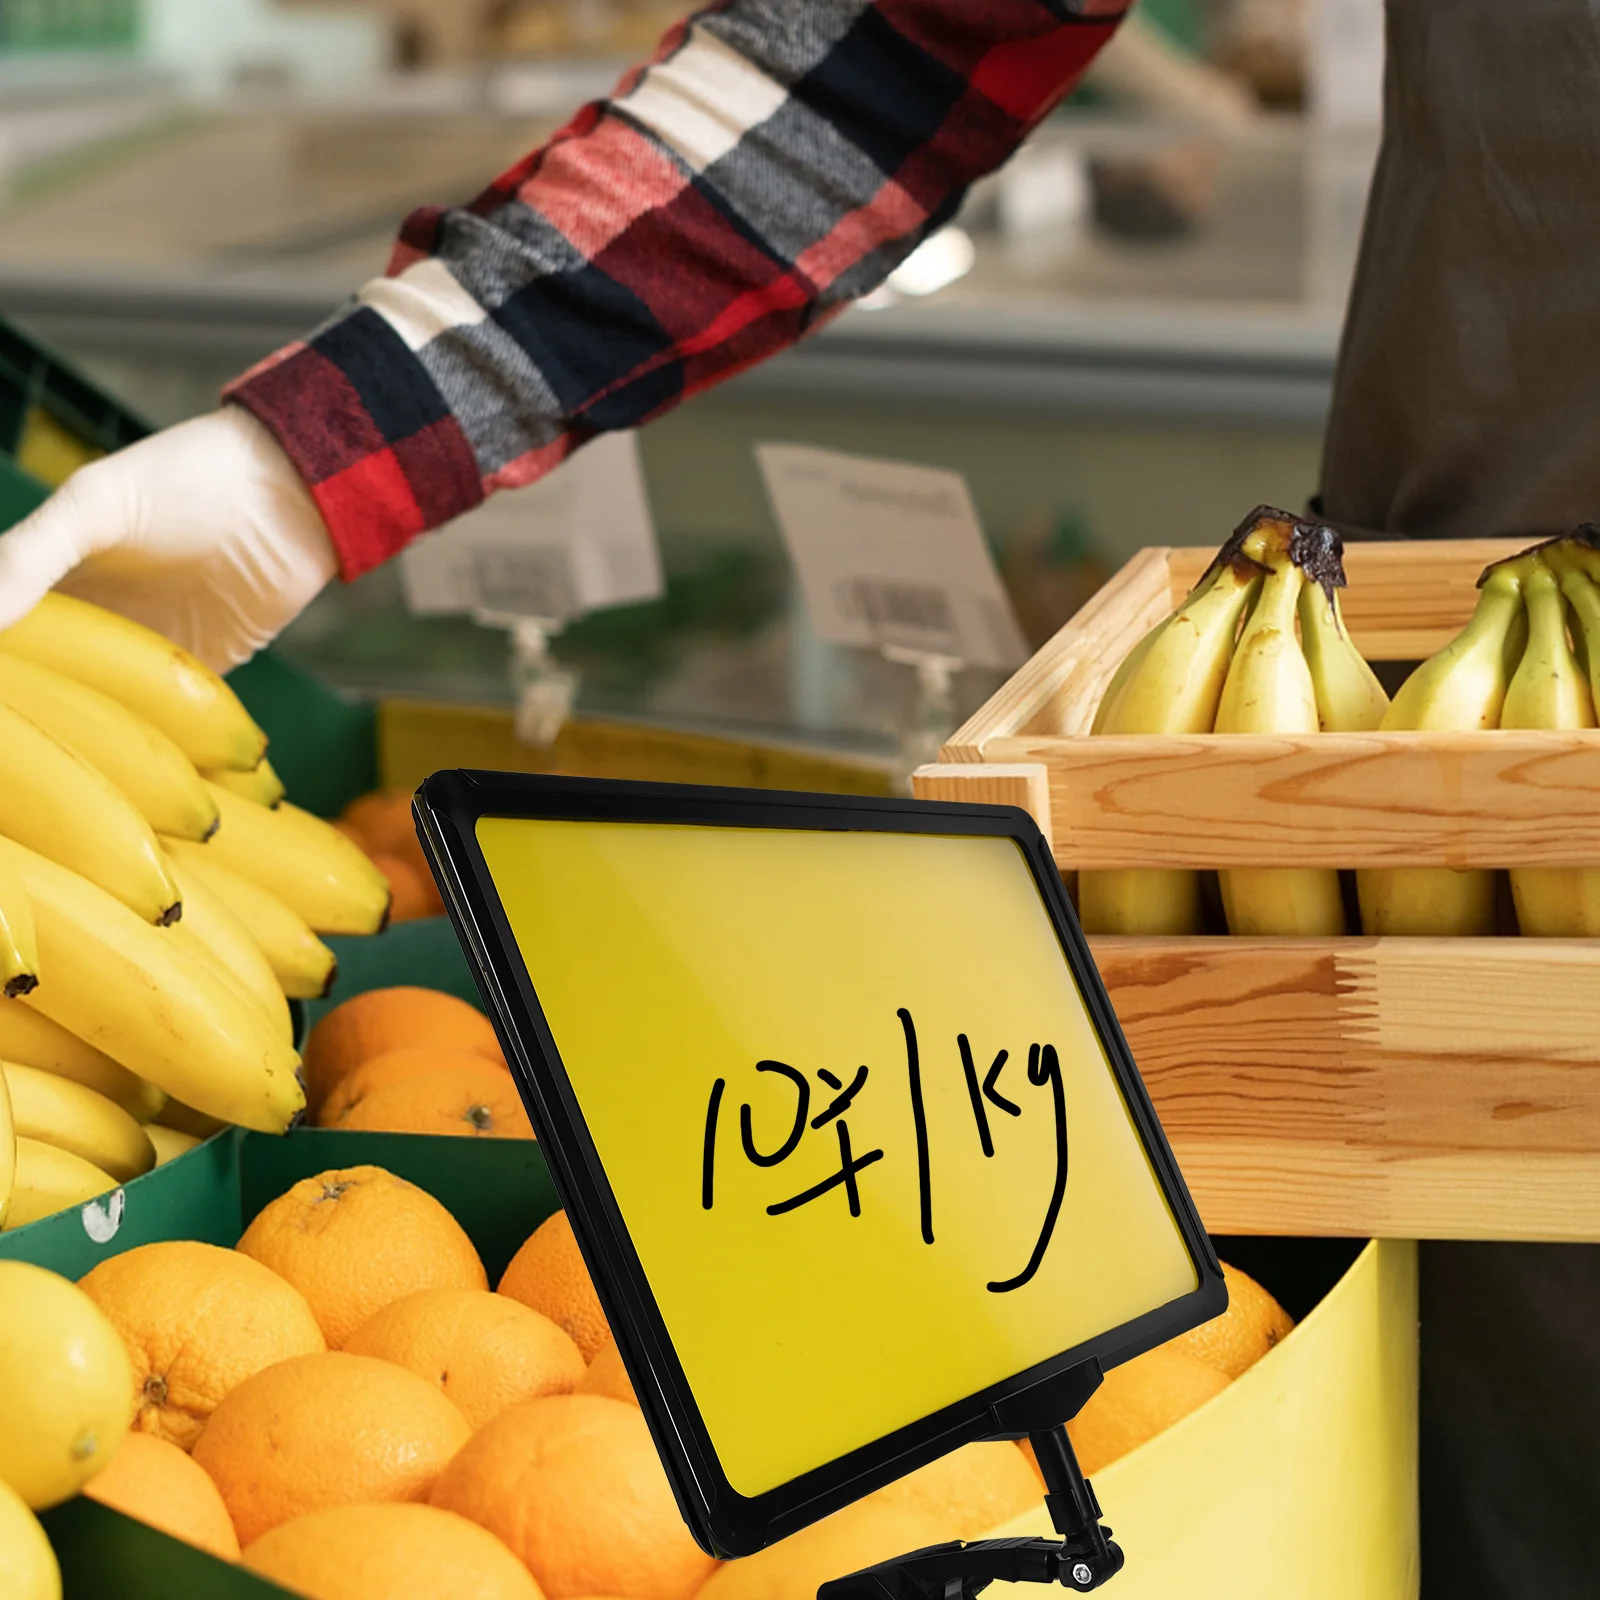 Храна знак Цена Хранителни знаци Реклама Етикет Rack Супермаркет Зеленчукови плодове Цена скоба изложбена стойка